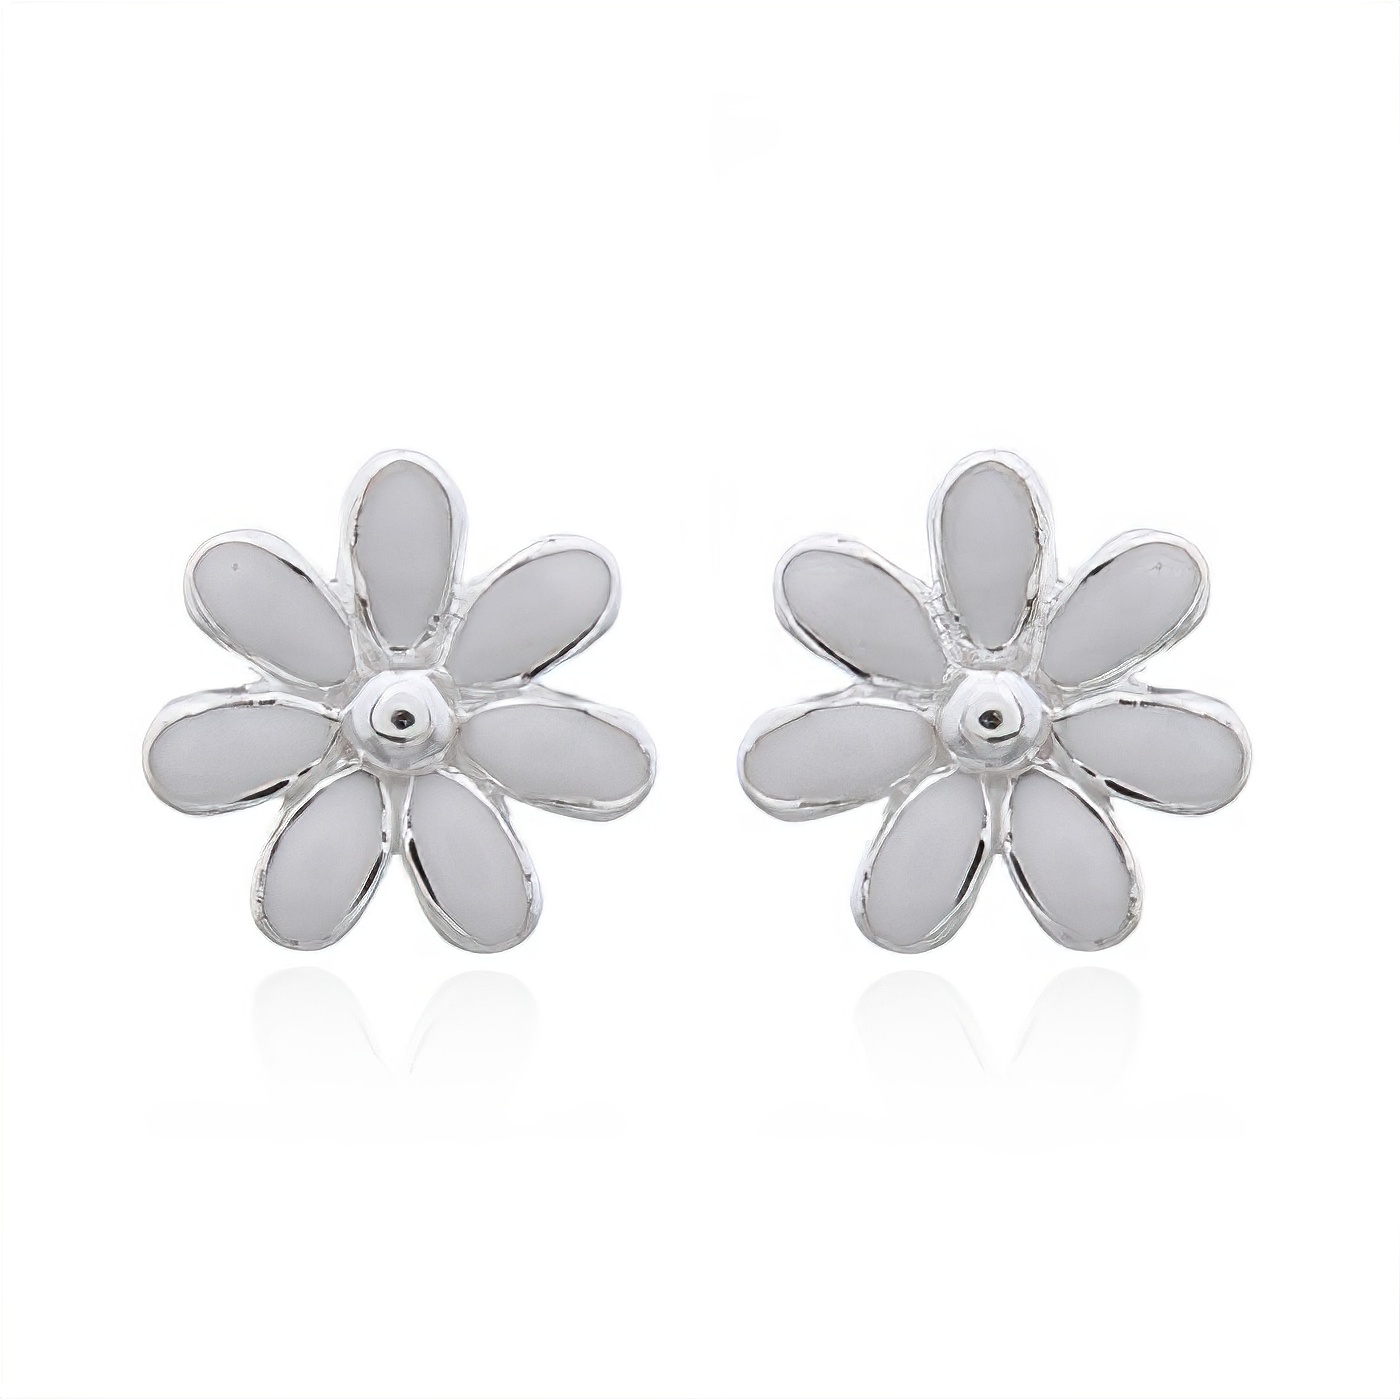 Lovely Mini White Enamel Flower 925 Silver Stud Earrings by BeYindi 